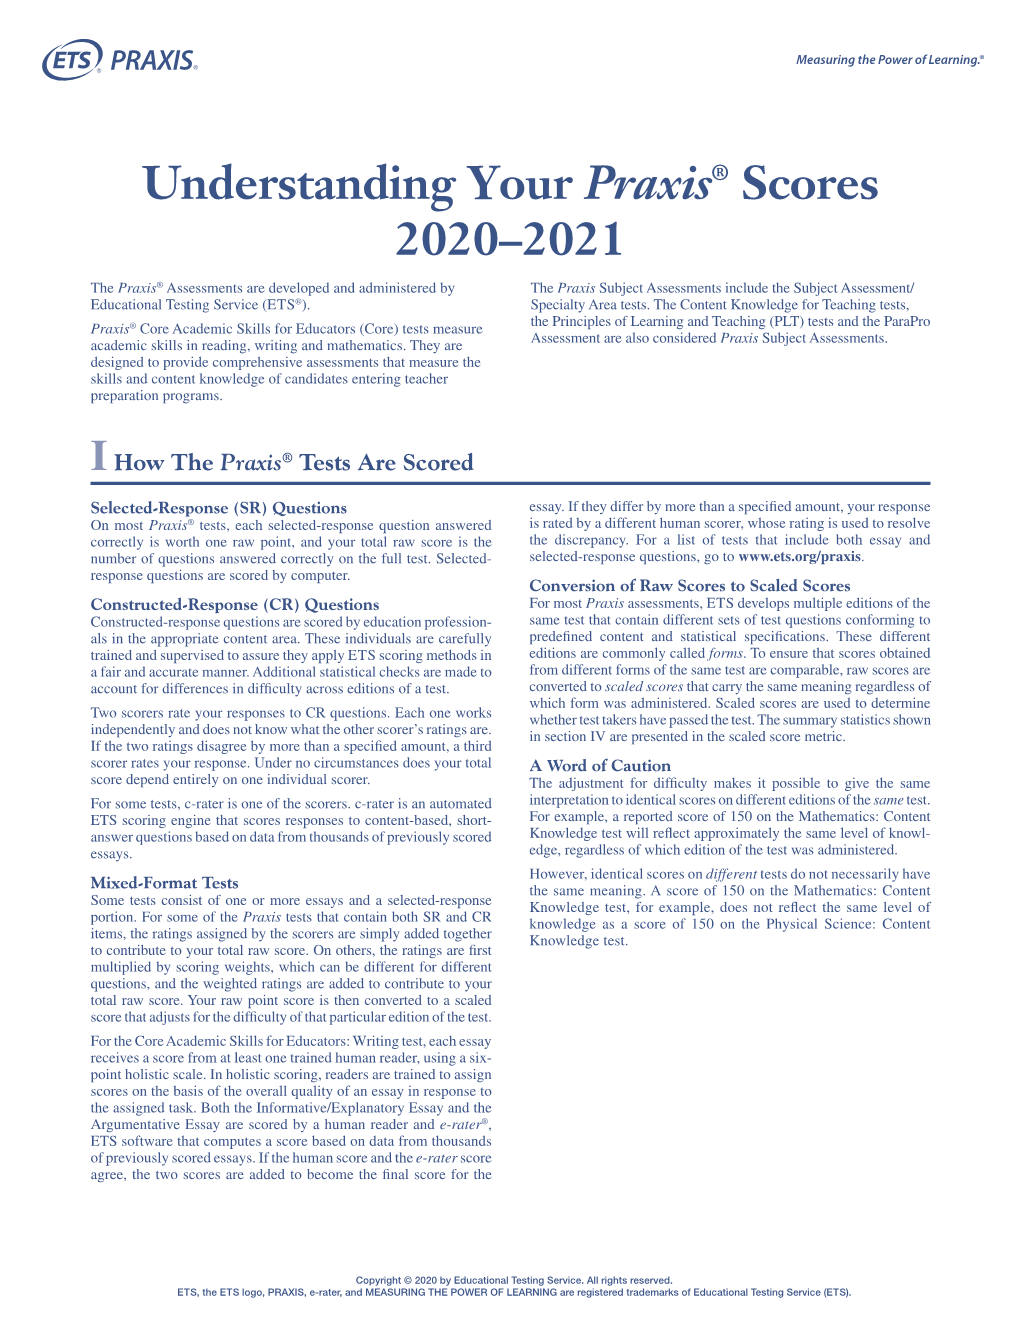 Understanding Your Praxis Scores 2020-2021